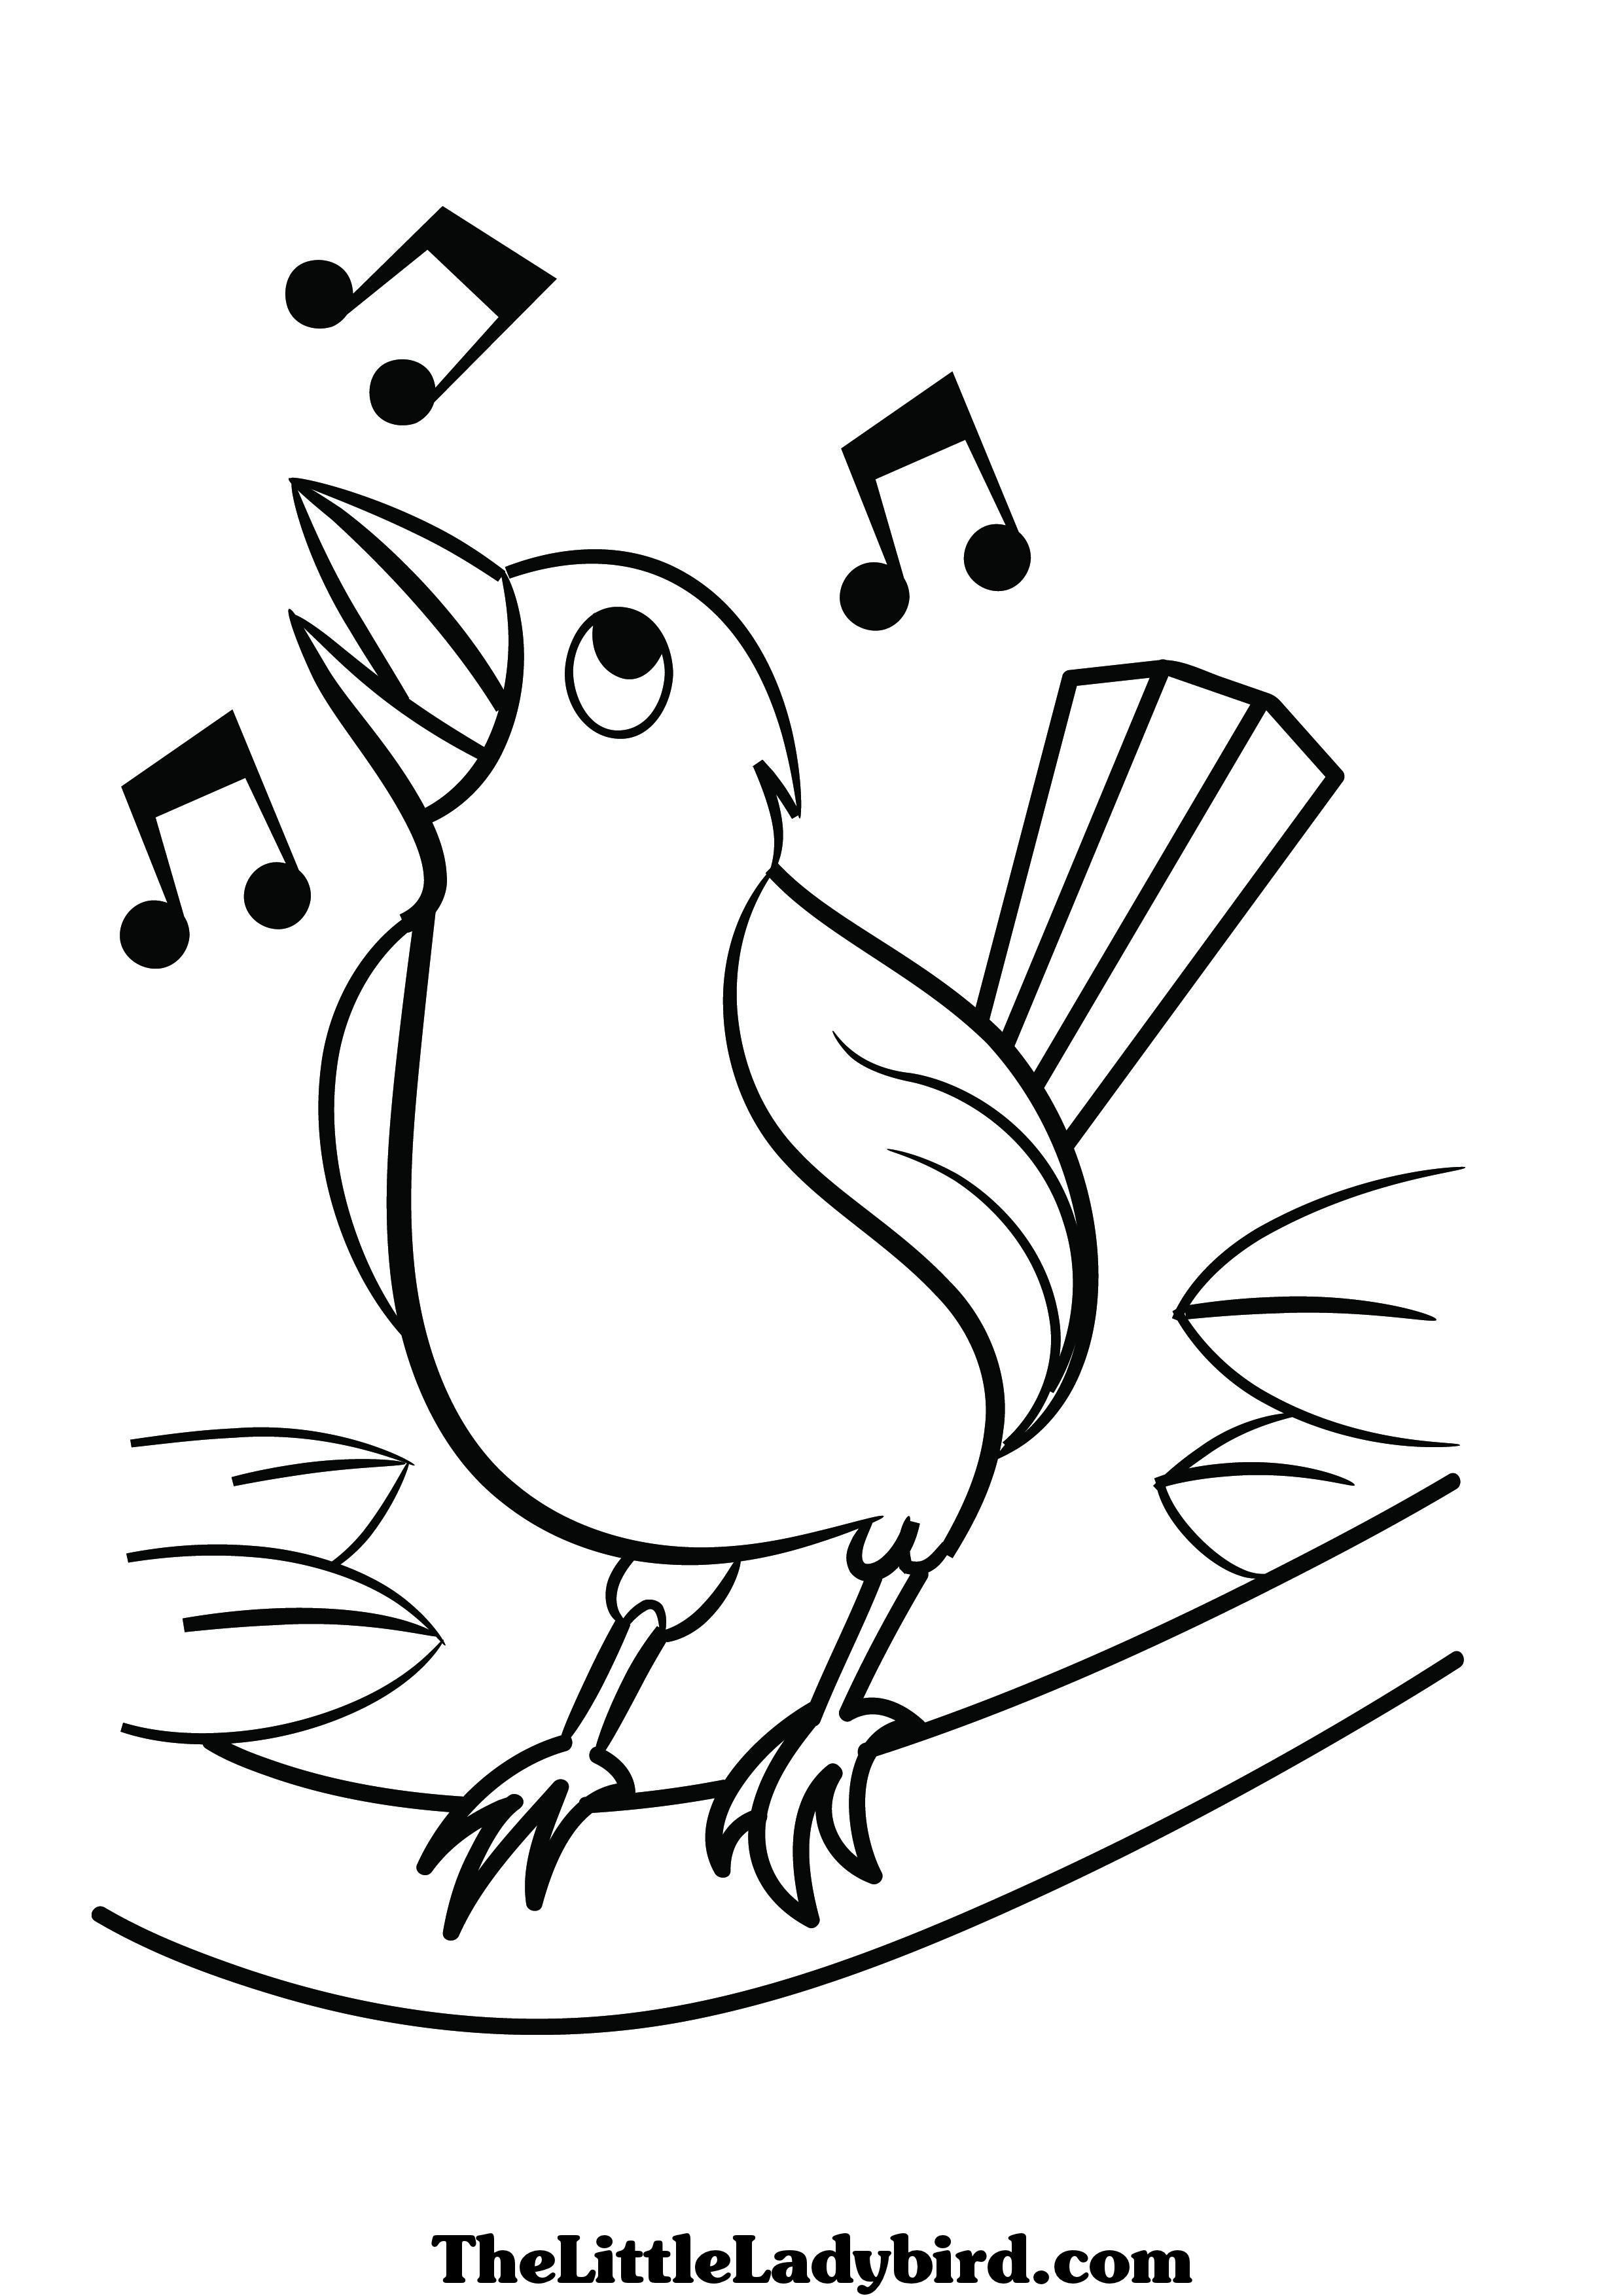 Ausmalbild Fruhling Singender Vogel Ausmalbilder Ausmalbilder Images